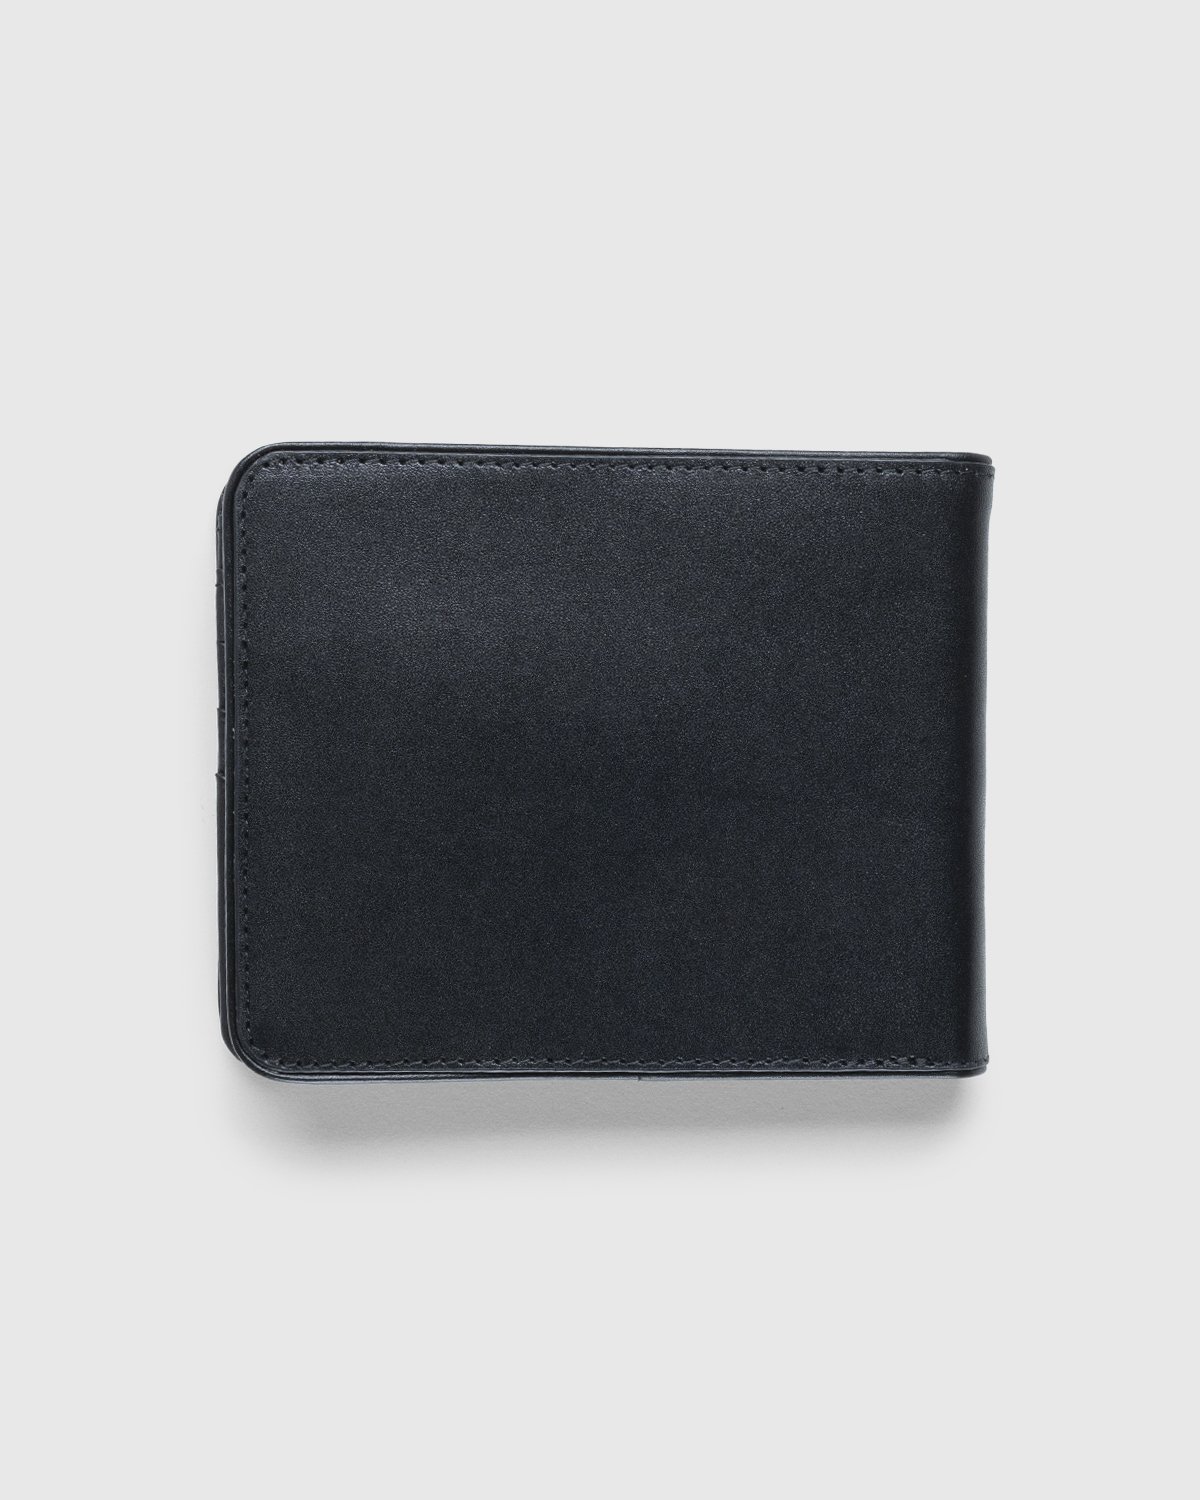 Dries van Noten - Leather Wallet Black - Accessories - Black - Image 2